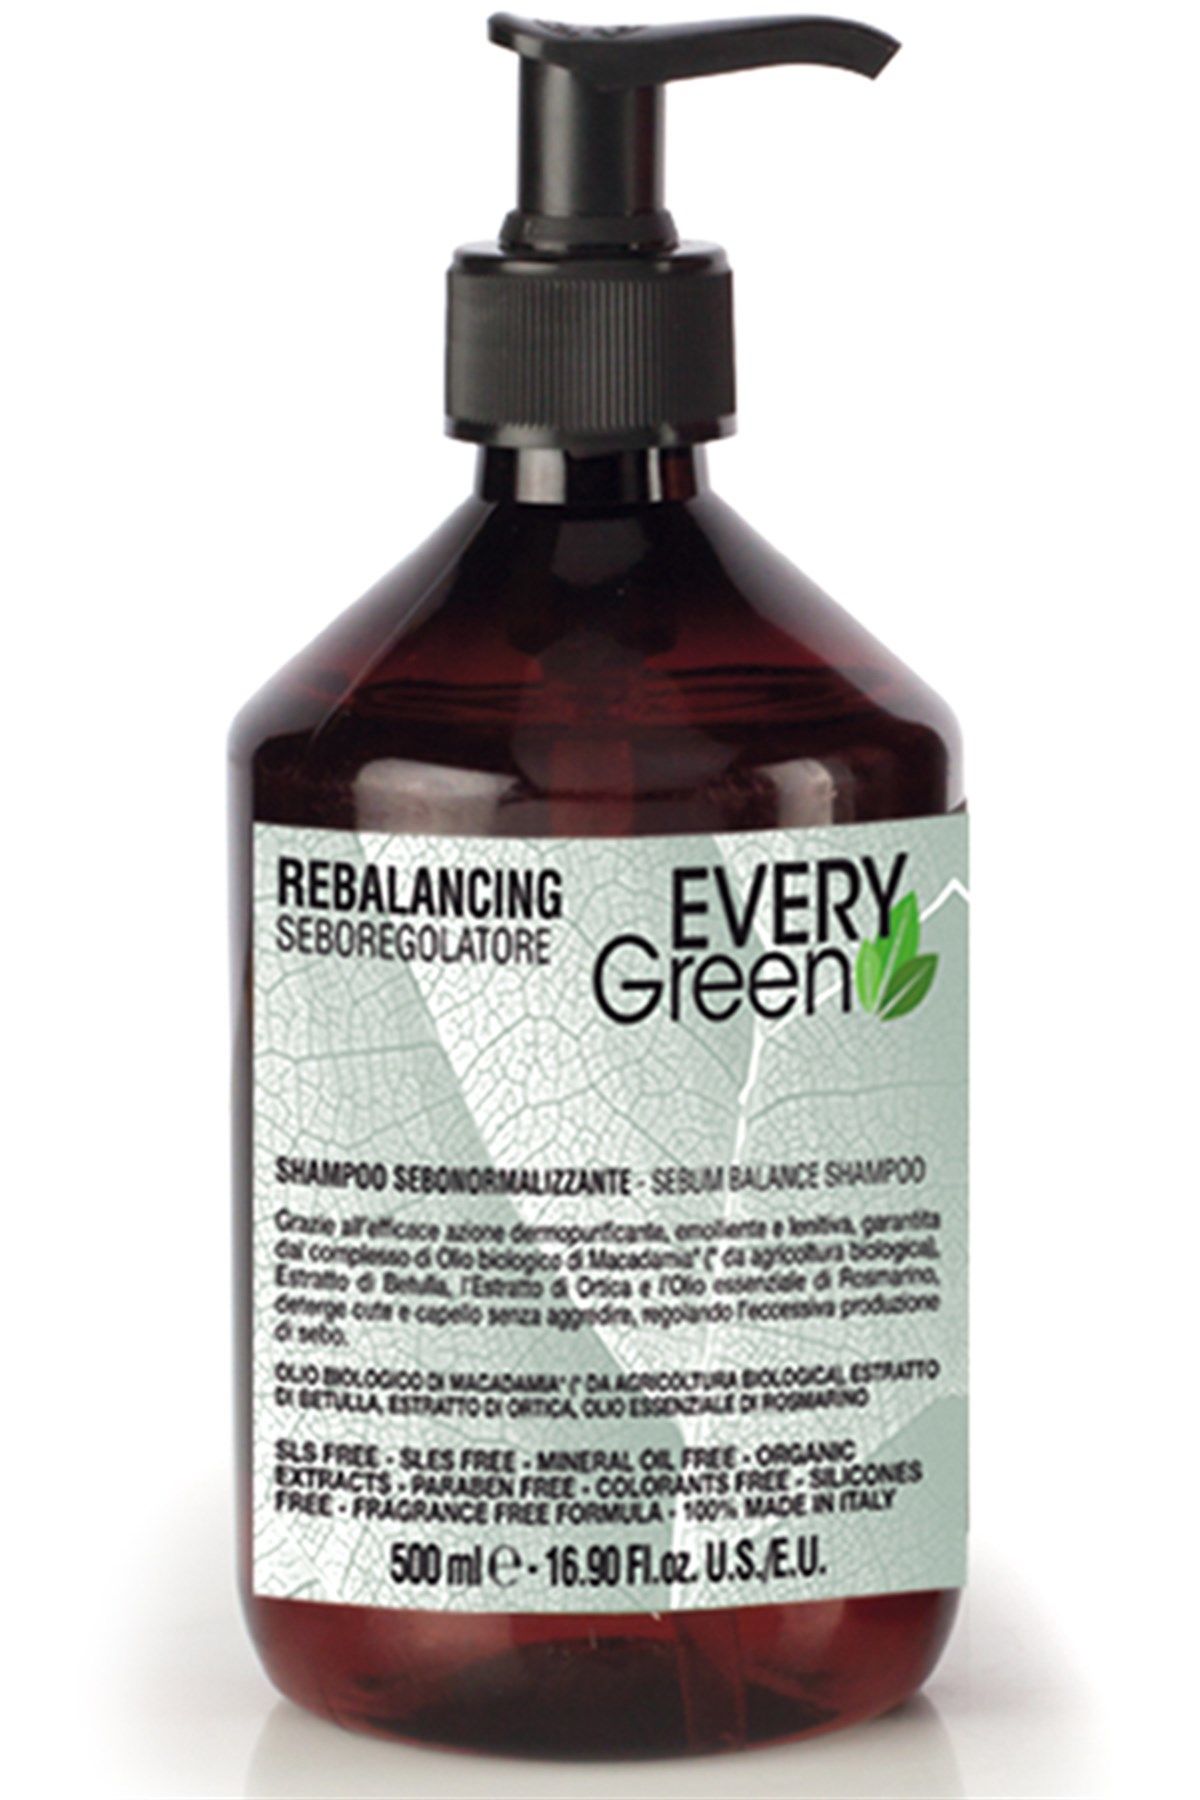 EveryGreen Rebalancing Shampoo - Yağlı Saçlar Dengeleyici Şampuan 500 ml